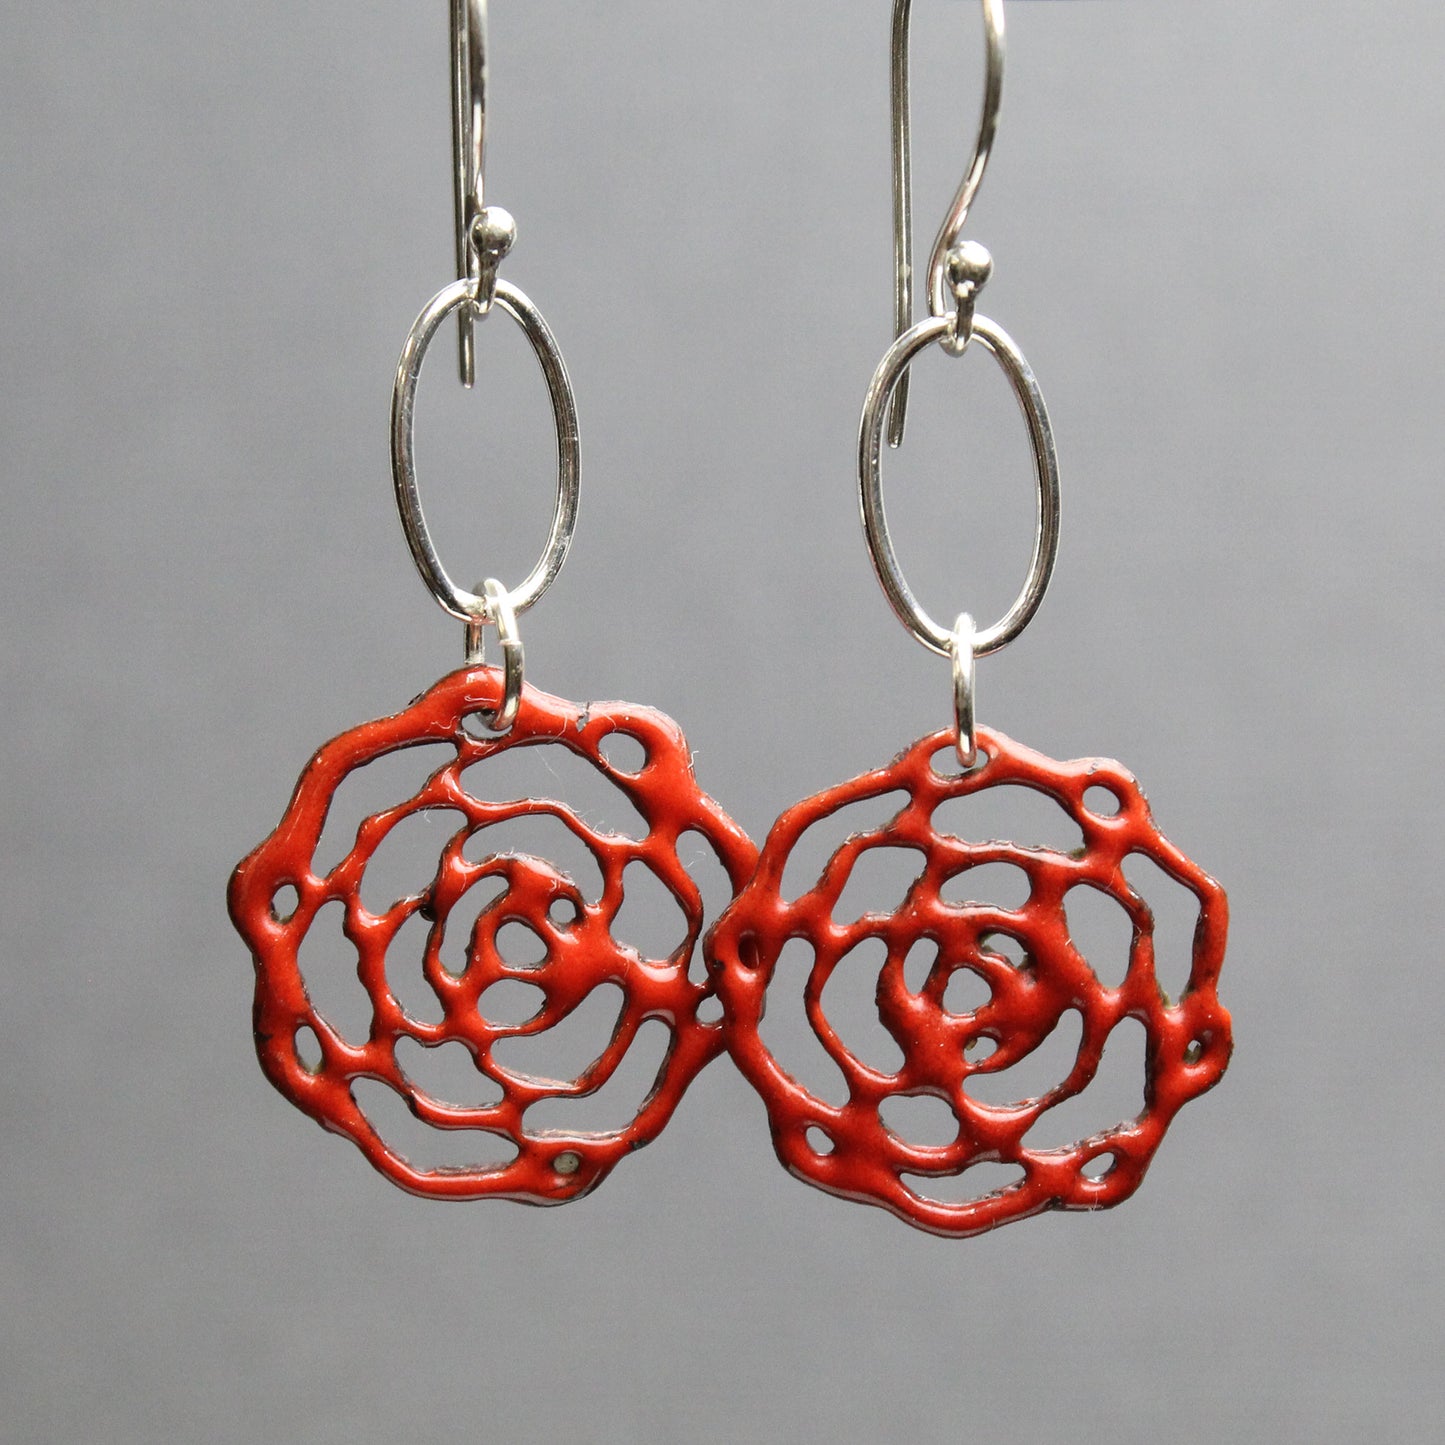 Red Enamel Flower Earrings With Sterling Silver Ear Wires